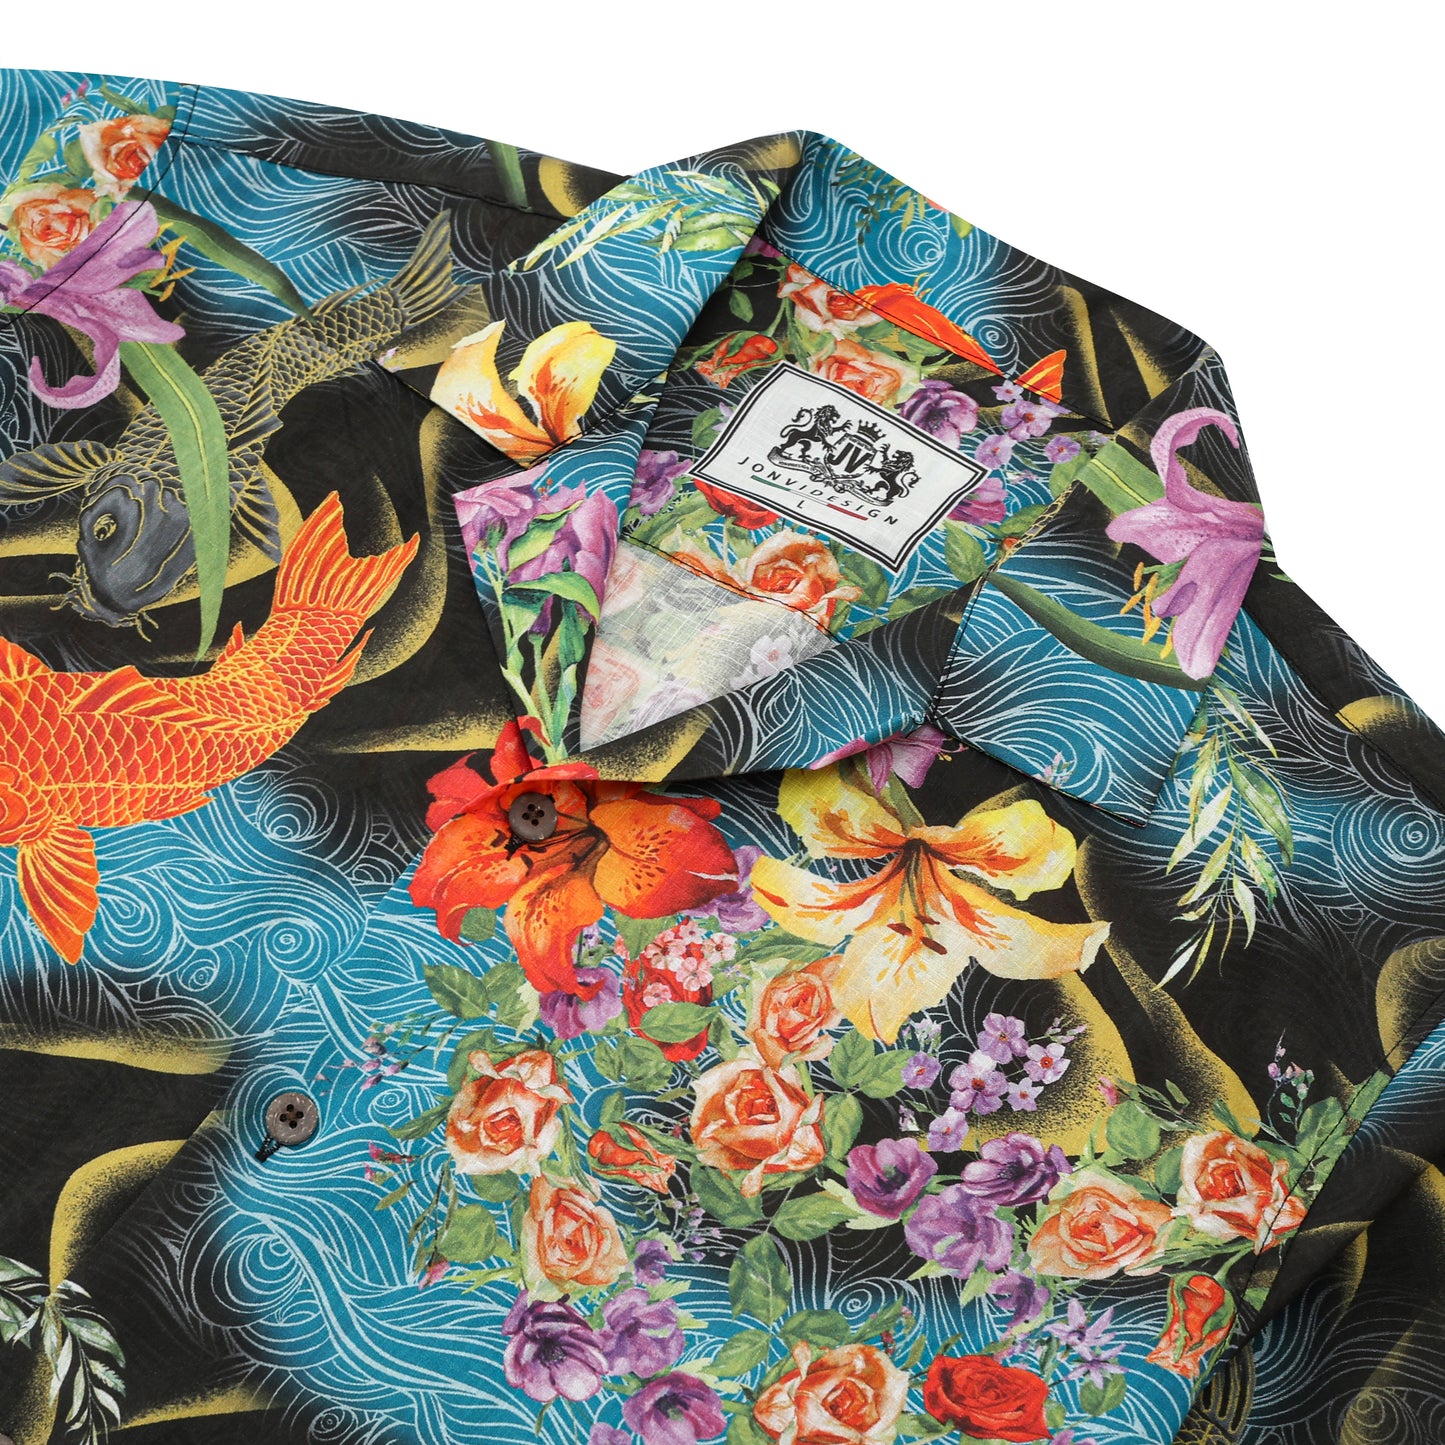 Ukiyo-e Golden Fish Pattern Camp Collar Short Sleeve Shirt